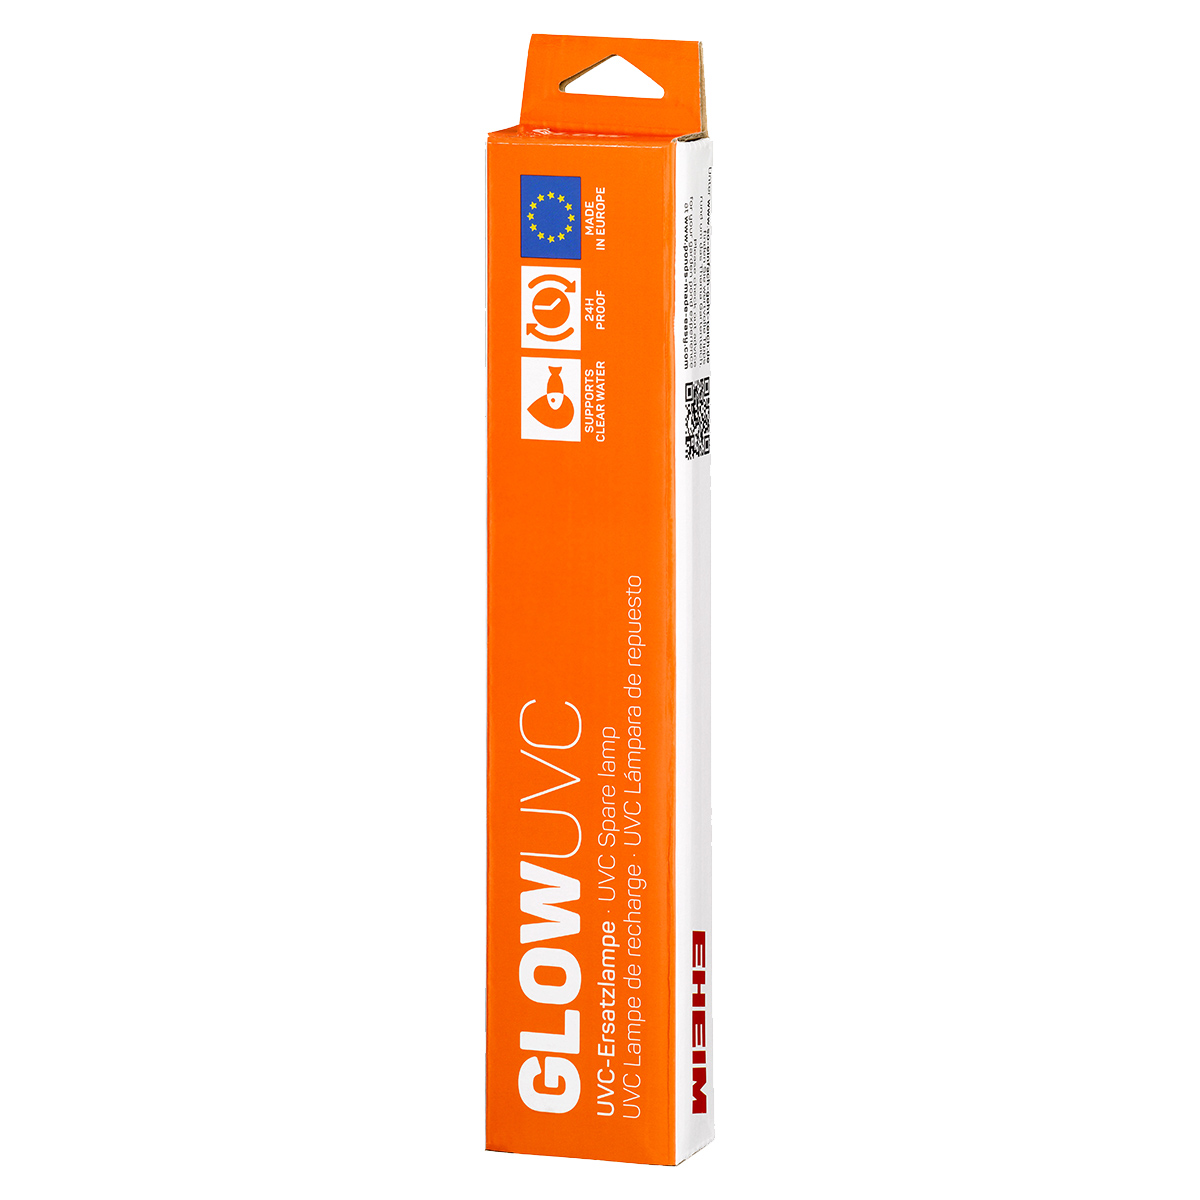 EHEIM GLOWUVC náhradní žárovka pro CLEARUVC 7 W